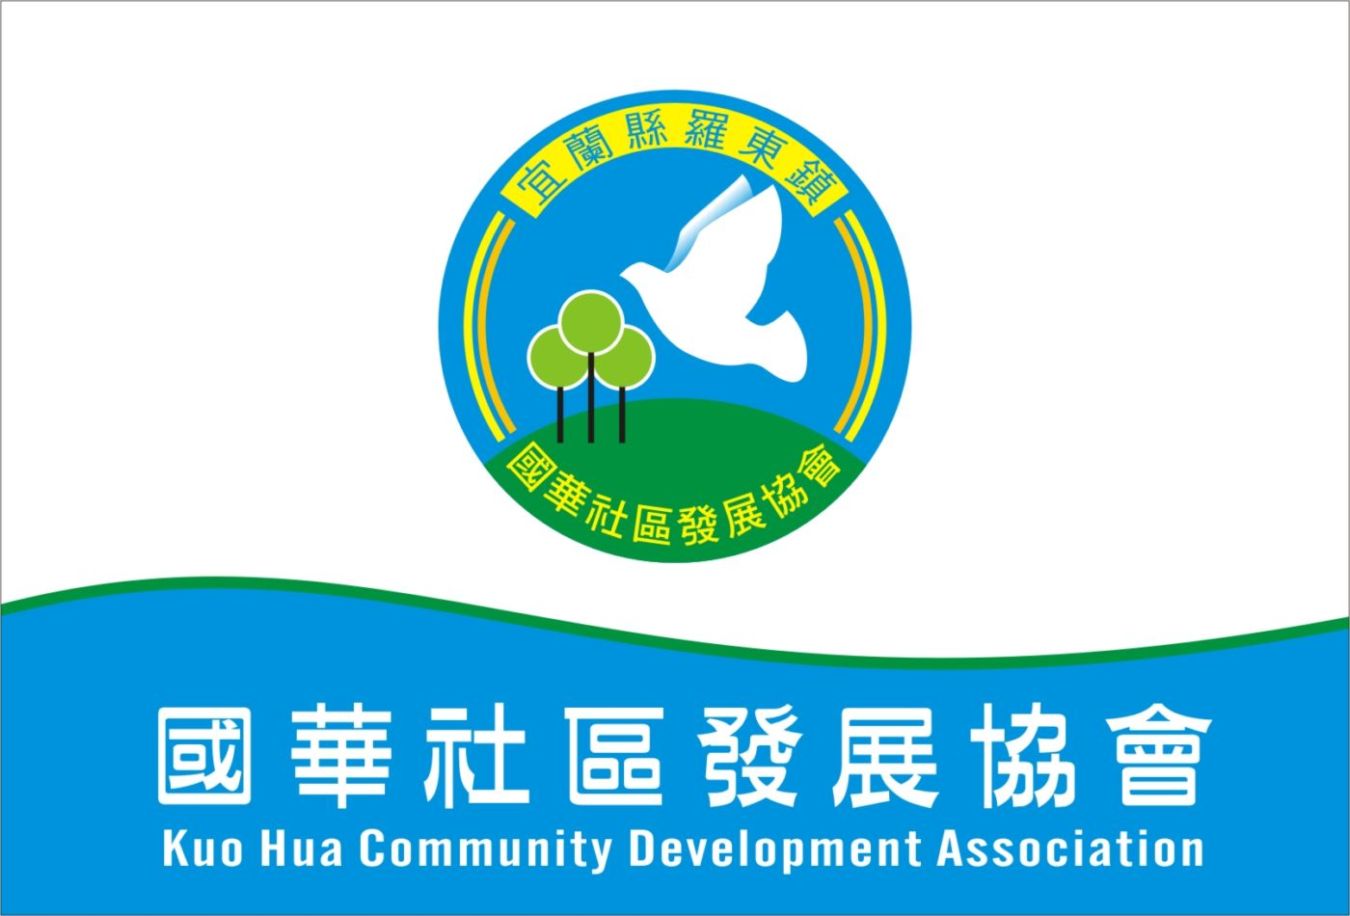 宜蘭縣羅東鎮國華社區發展協會代表圖像